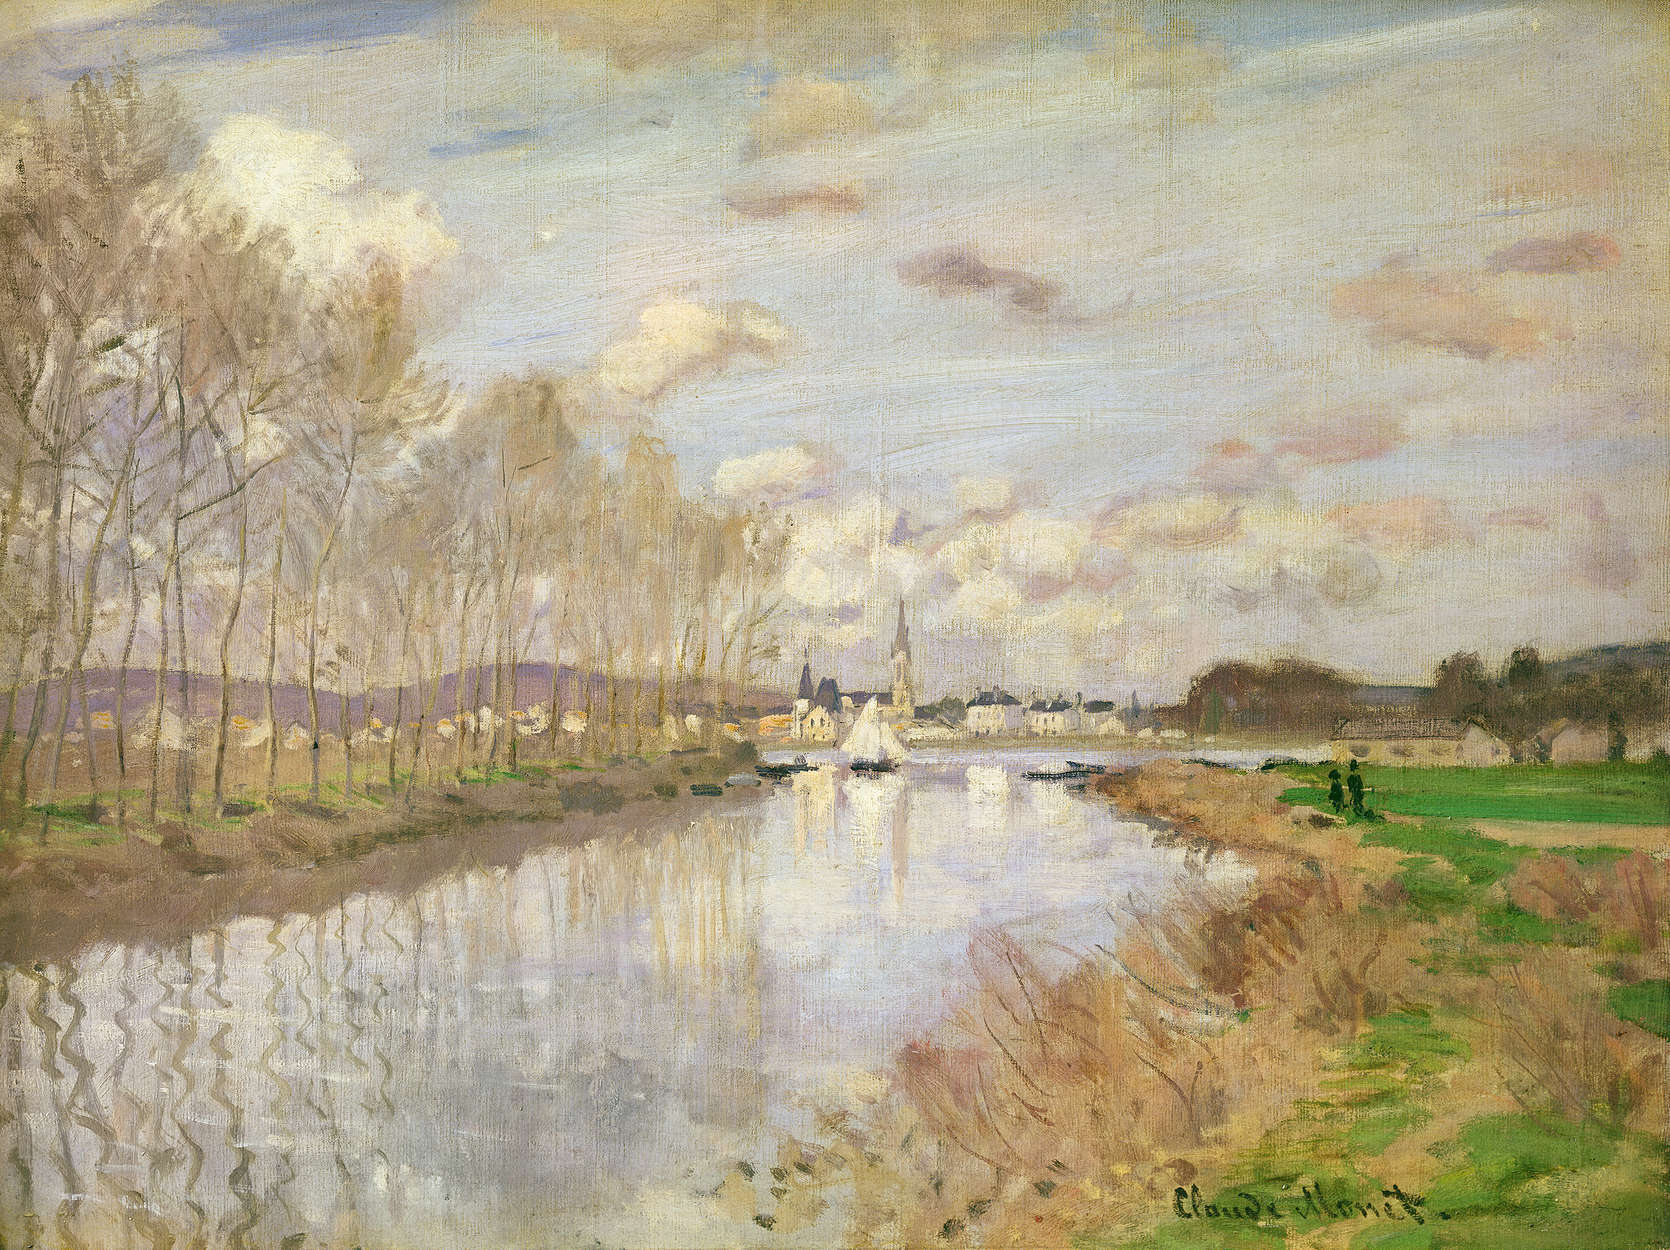             Fototapete "Die Yacht bei Argenteuil" von Claude Monet
        